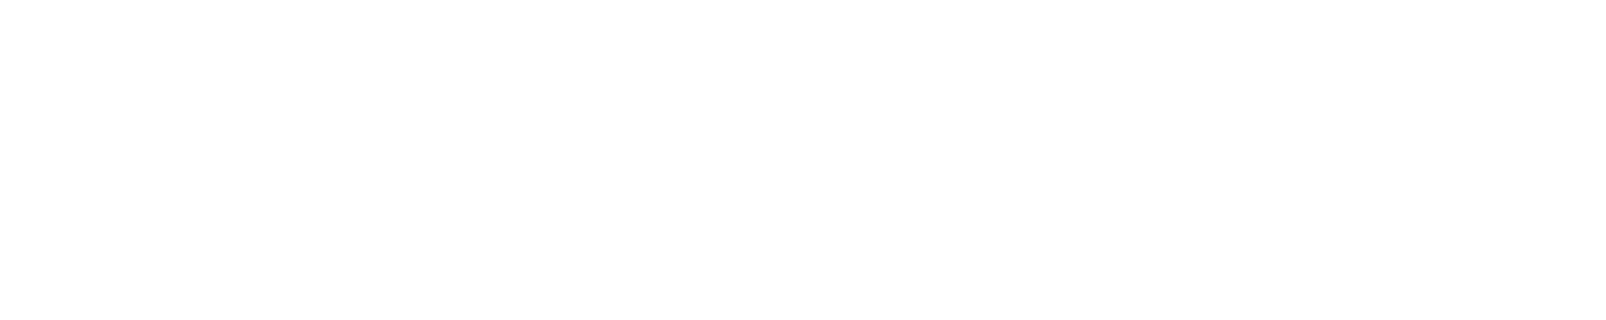 Indutrade logo large for dark backgrounds (transparent PNG)